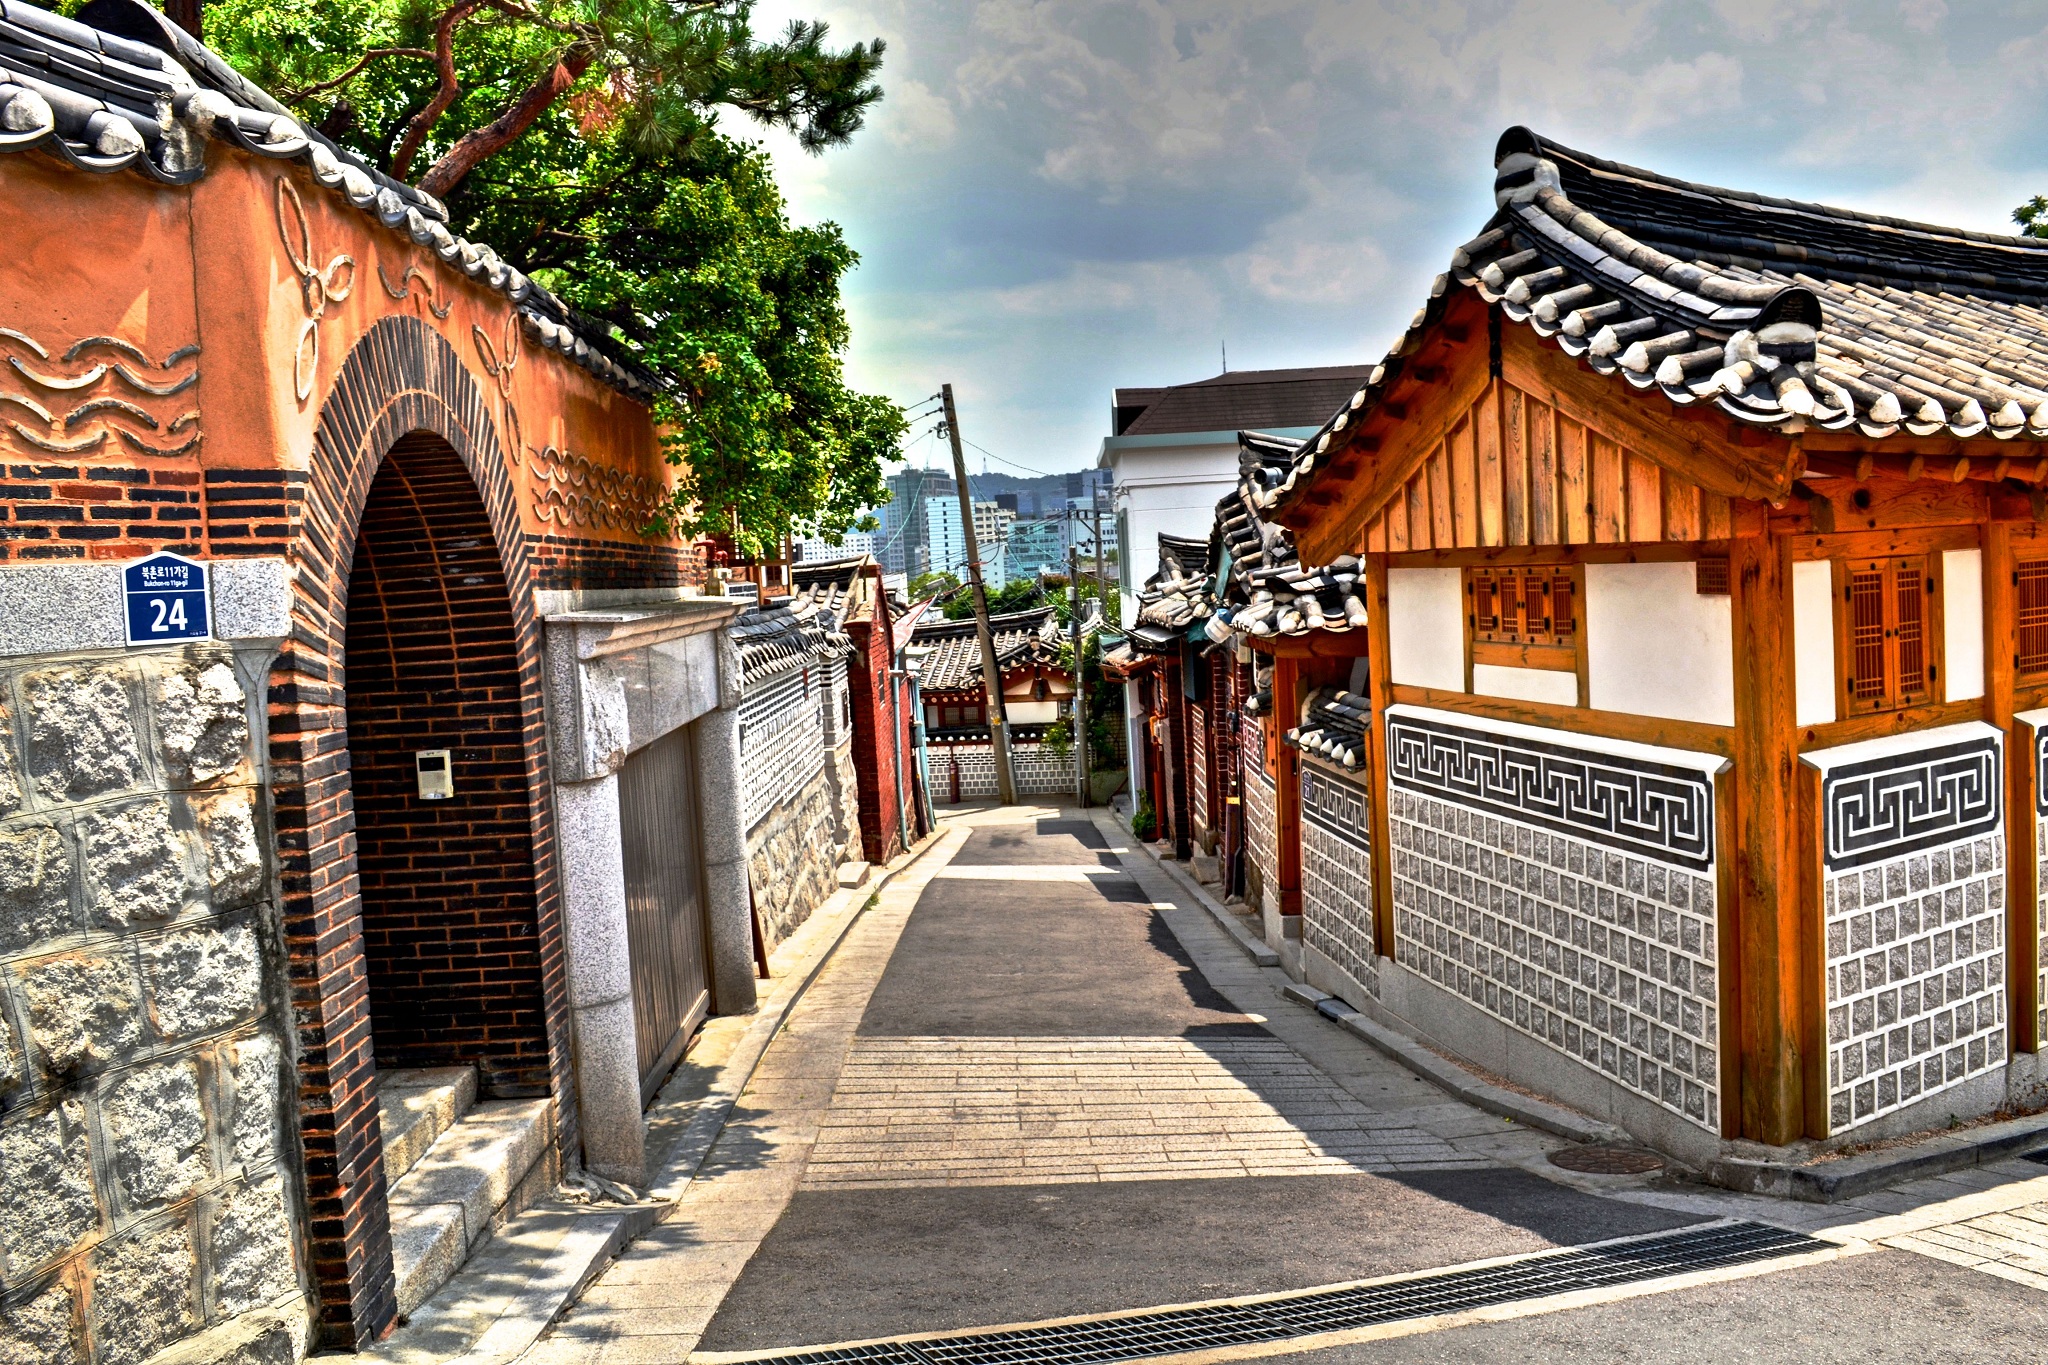 Seoul: Thủ đô của Hàn Quốc đã trở thành một địa điểm du lịch hàng đầu với sự kết hợp giữa nền văn hóa truyền thống và các thành phố hiện đại. Tại Seoul, bạn sẽ có cơ hội khám phá đầy đủ những ưu điểm của Hàn Quốc, như ẩm thực địa phương, văn hóa đặc sắc và những điểm du lịch đáng chú ý. Hãy xem hình ảnh của Seoul để bắt đầu kế hoạch cho chuyến đi tới đây.